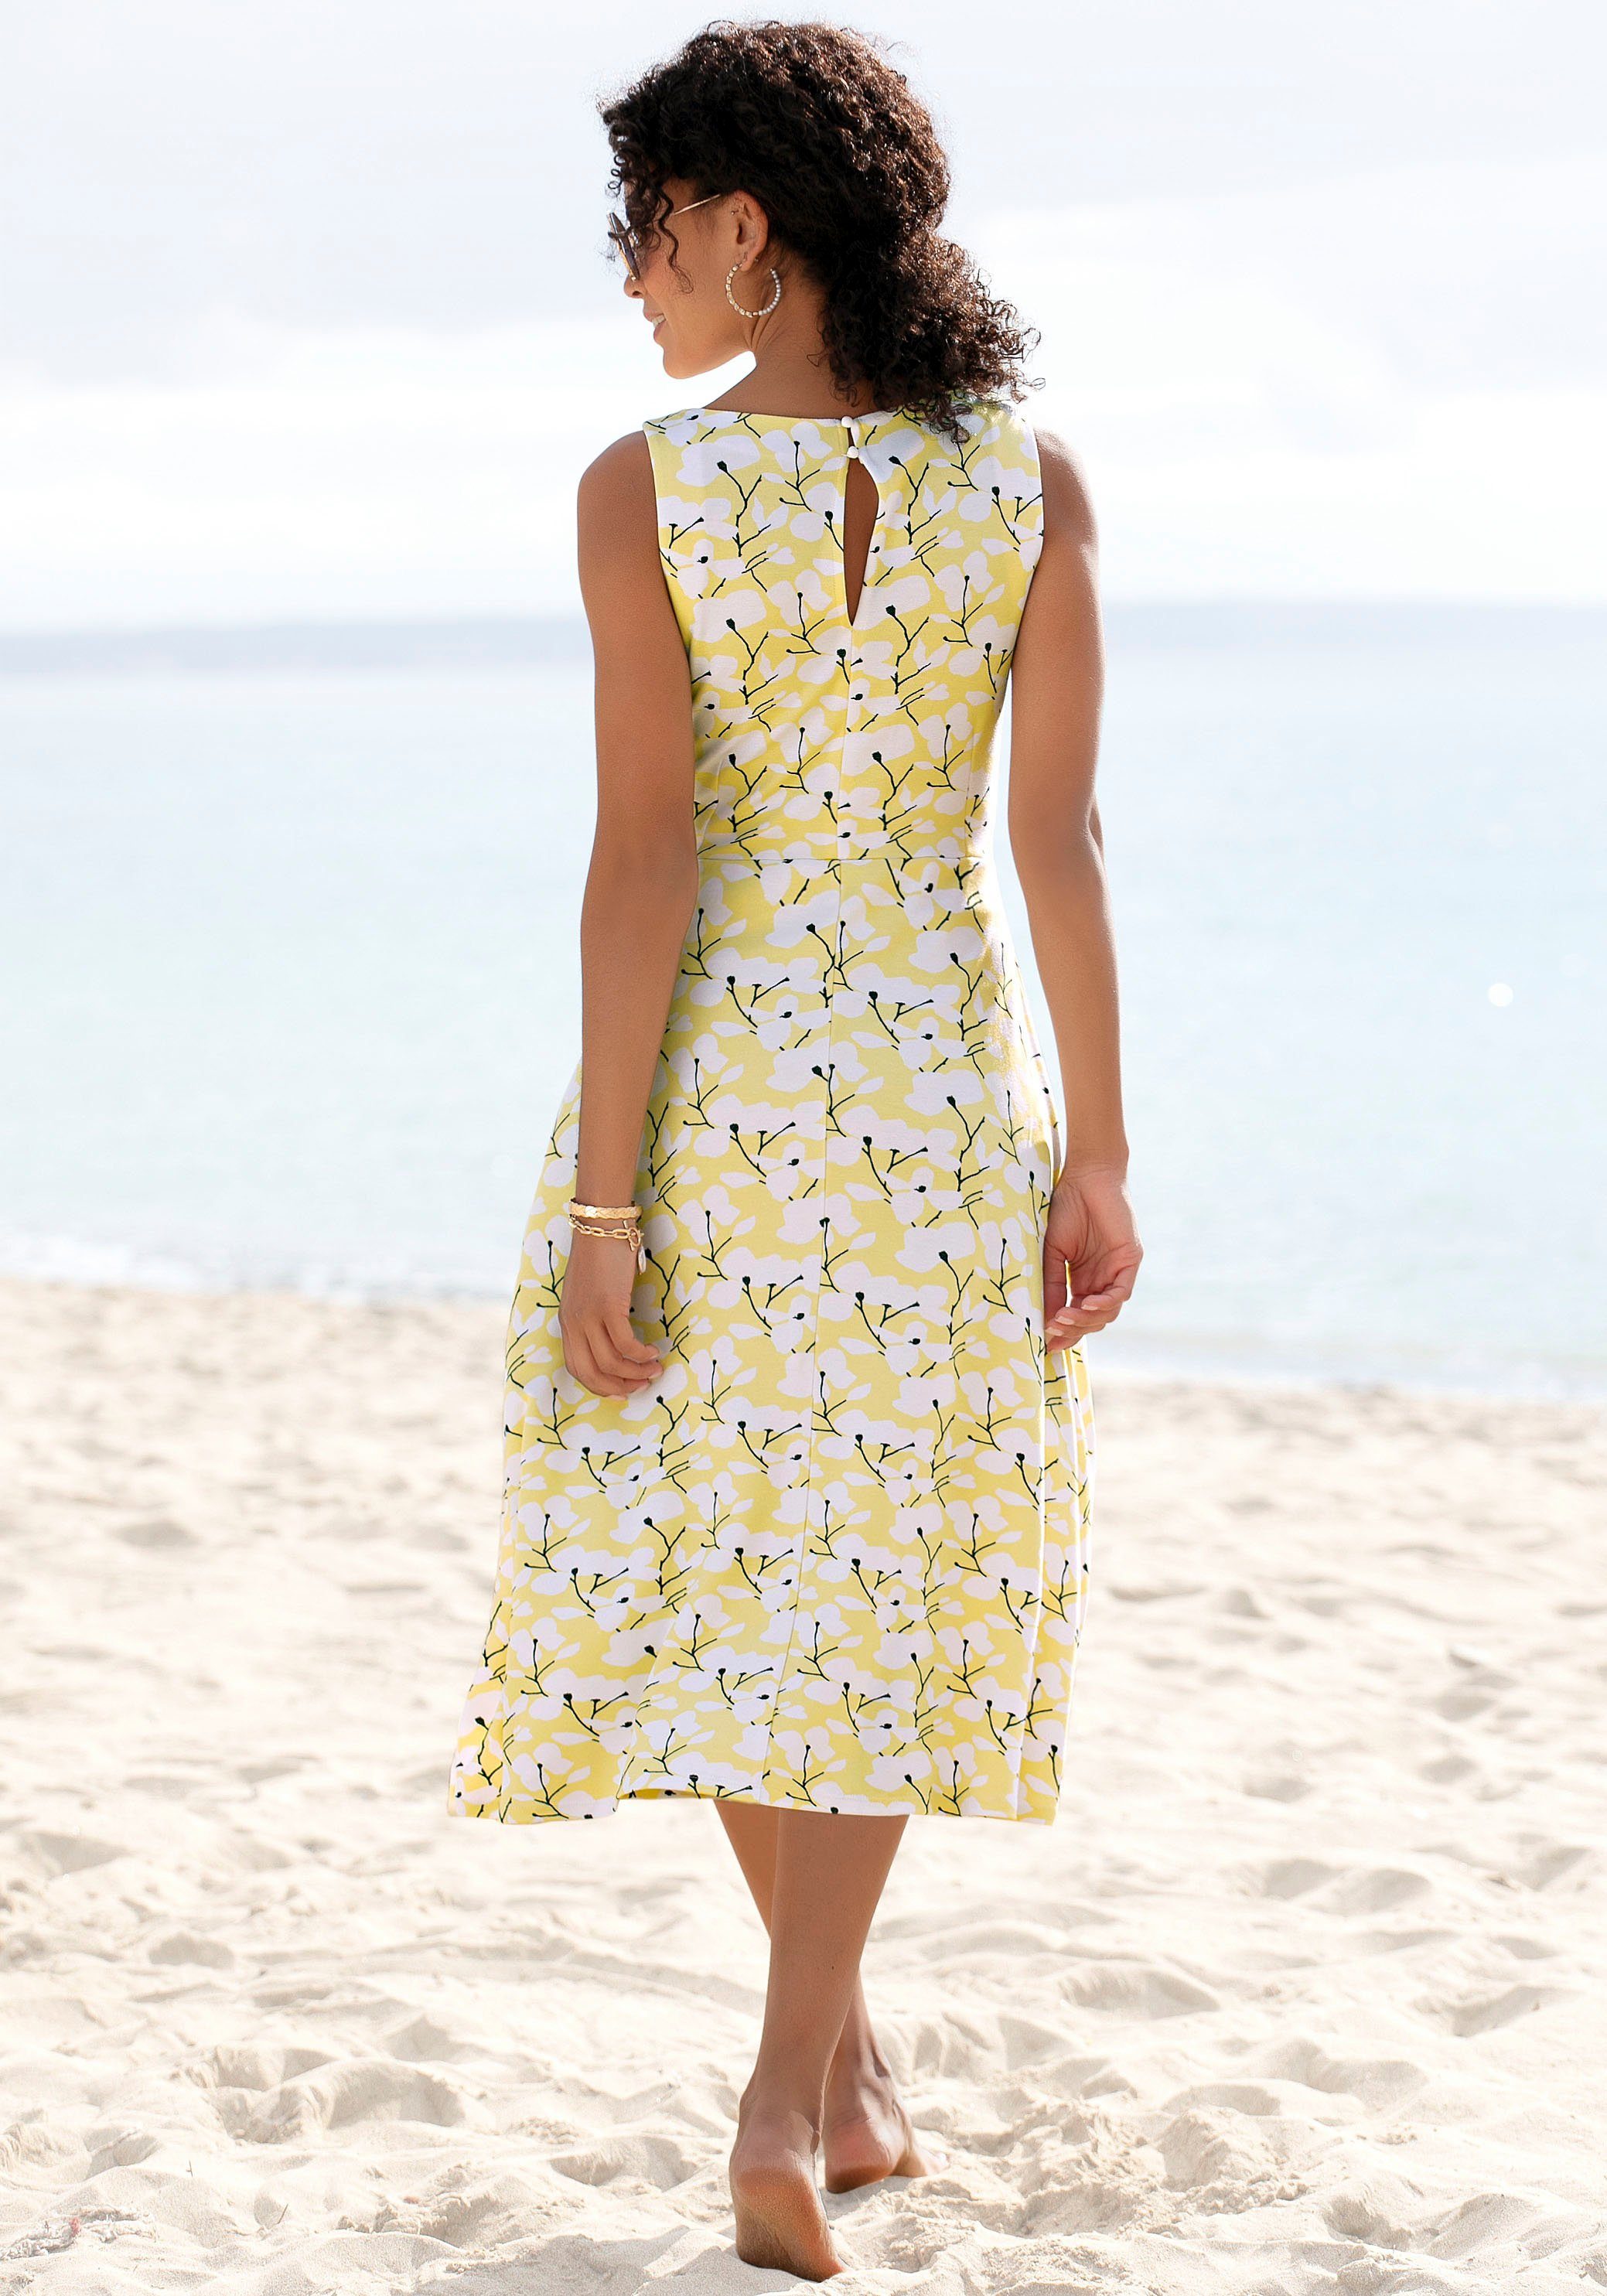 Beachtime Sommerkleid mit gelb-creme-bedruckt Strandmode, Blumendruck, Strandbekleidung